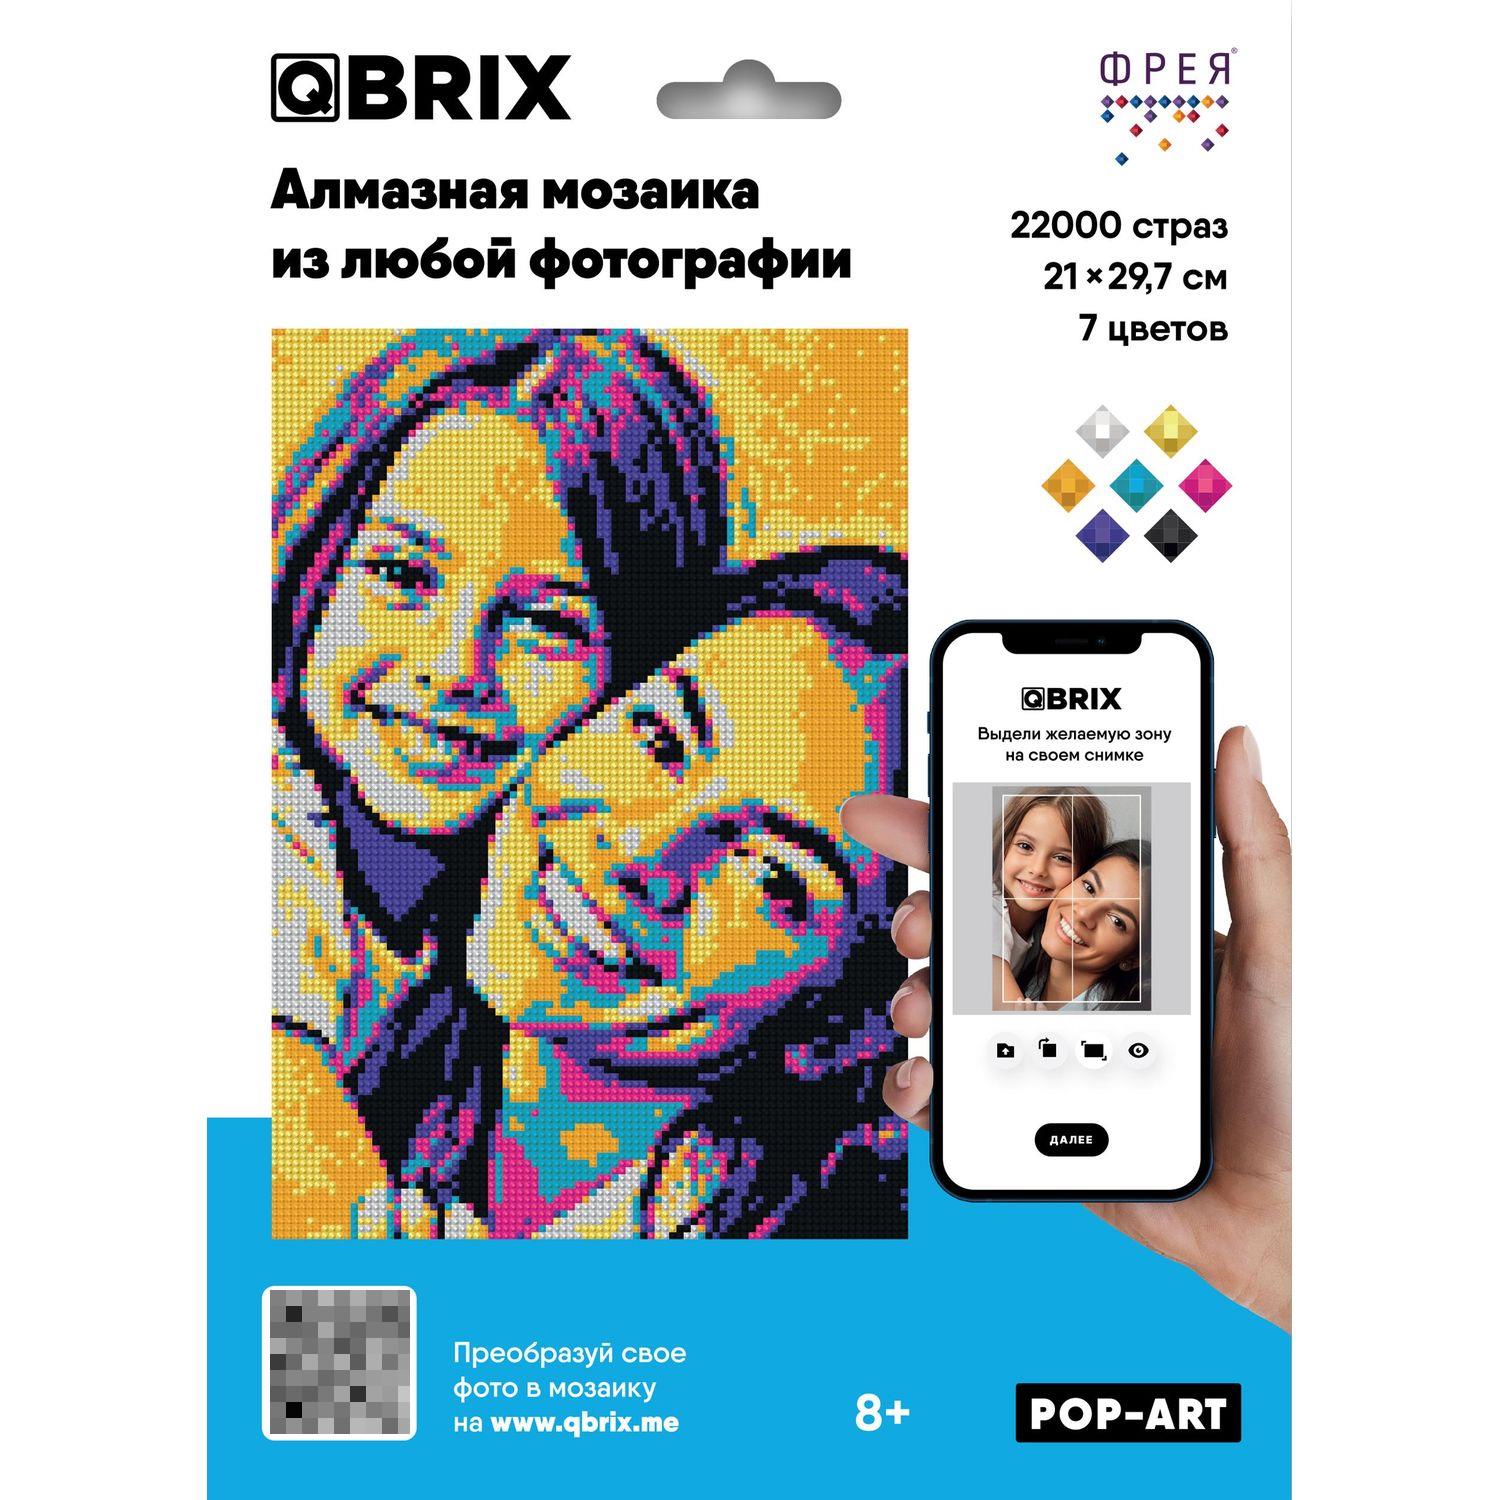 Алмазная фотомозаика QBRIX - POP-ART (сборка своего фото из 7 цветов)